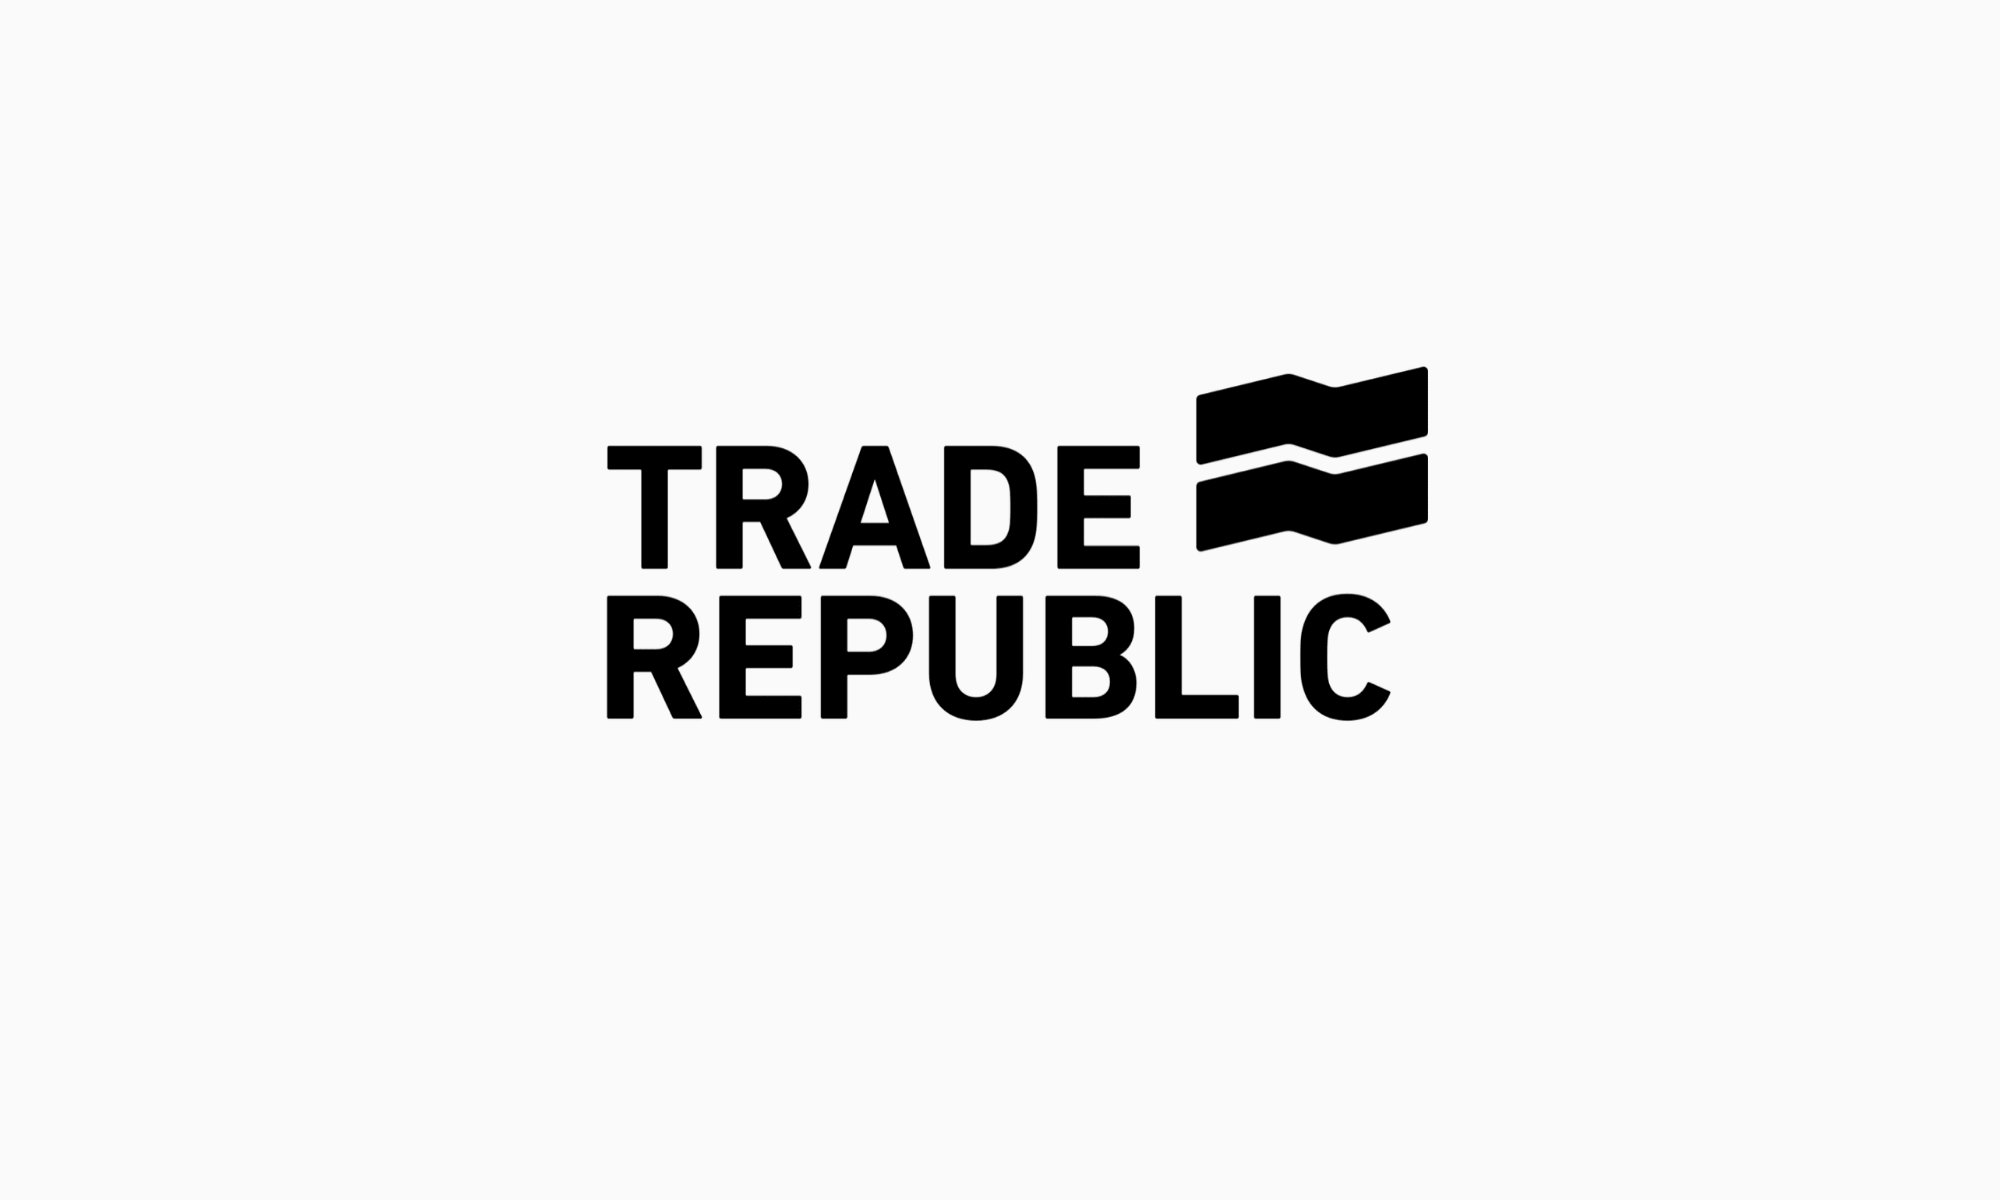 تريد ريبابليك Trade Republic ترتفع إلى 4 ملايين عميل خلال 5 سنوات